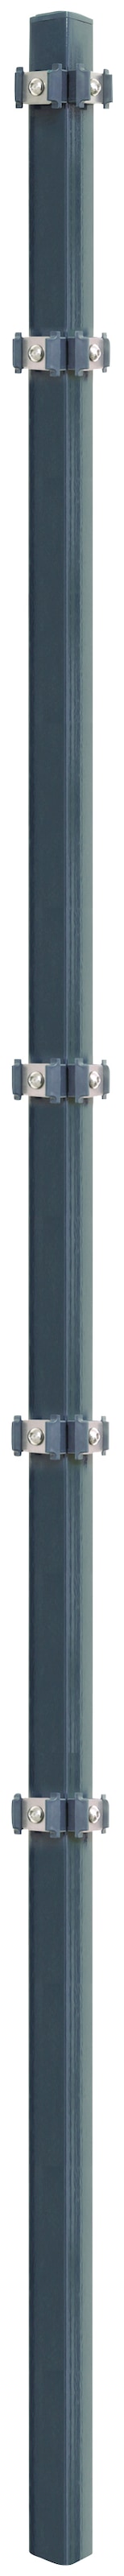 Arvotec Eckpfosten "ESSENTIAL 200", 4x4x260 cm für Mattenhöhe 200 cm, zum E günstig online kaufen